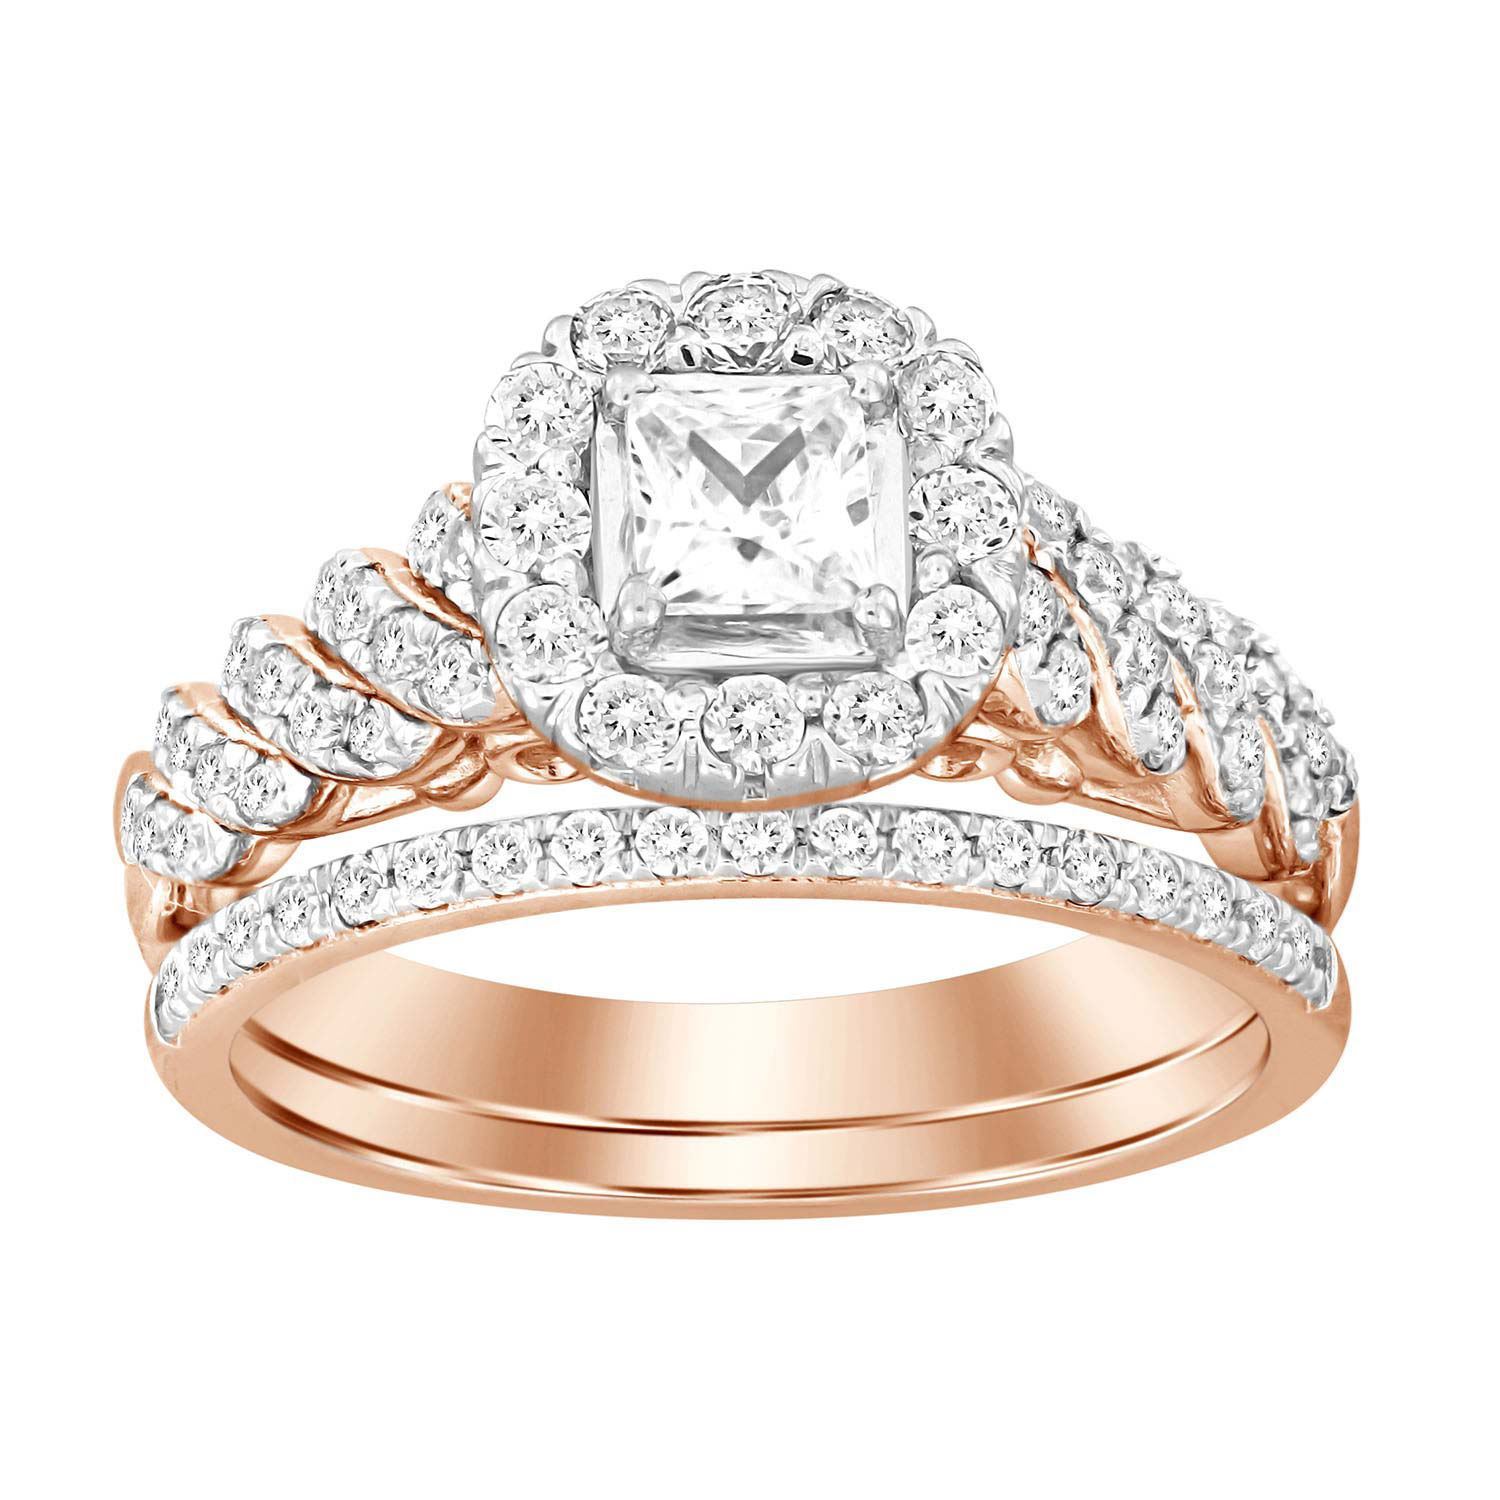 10K Yellow Gold Diamond Bridal Ring Set 1 Carat